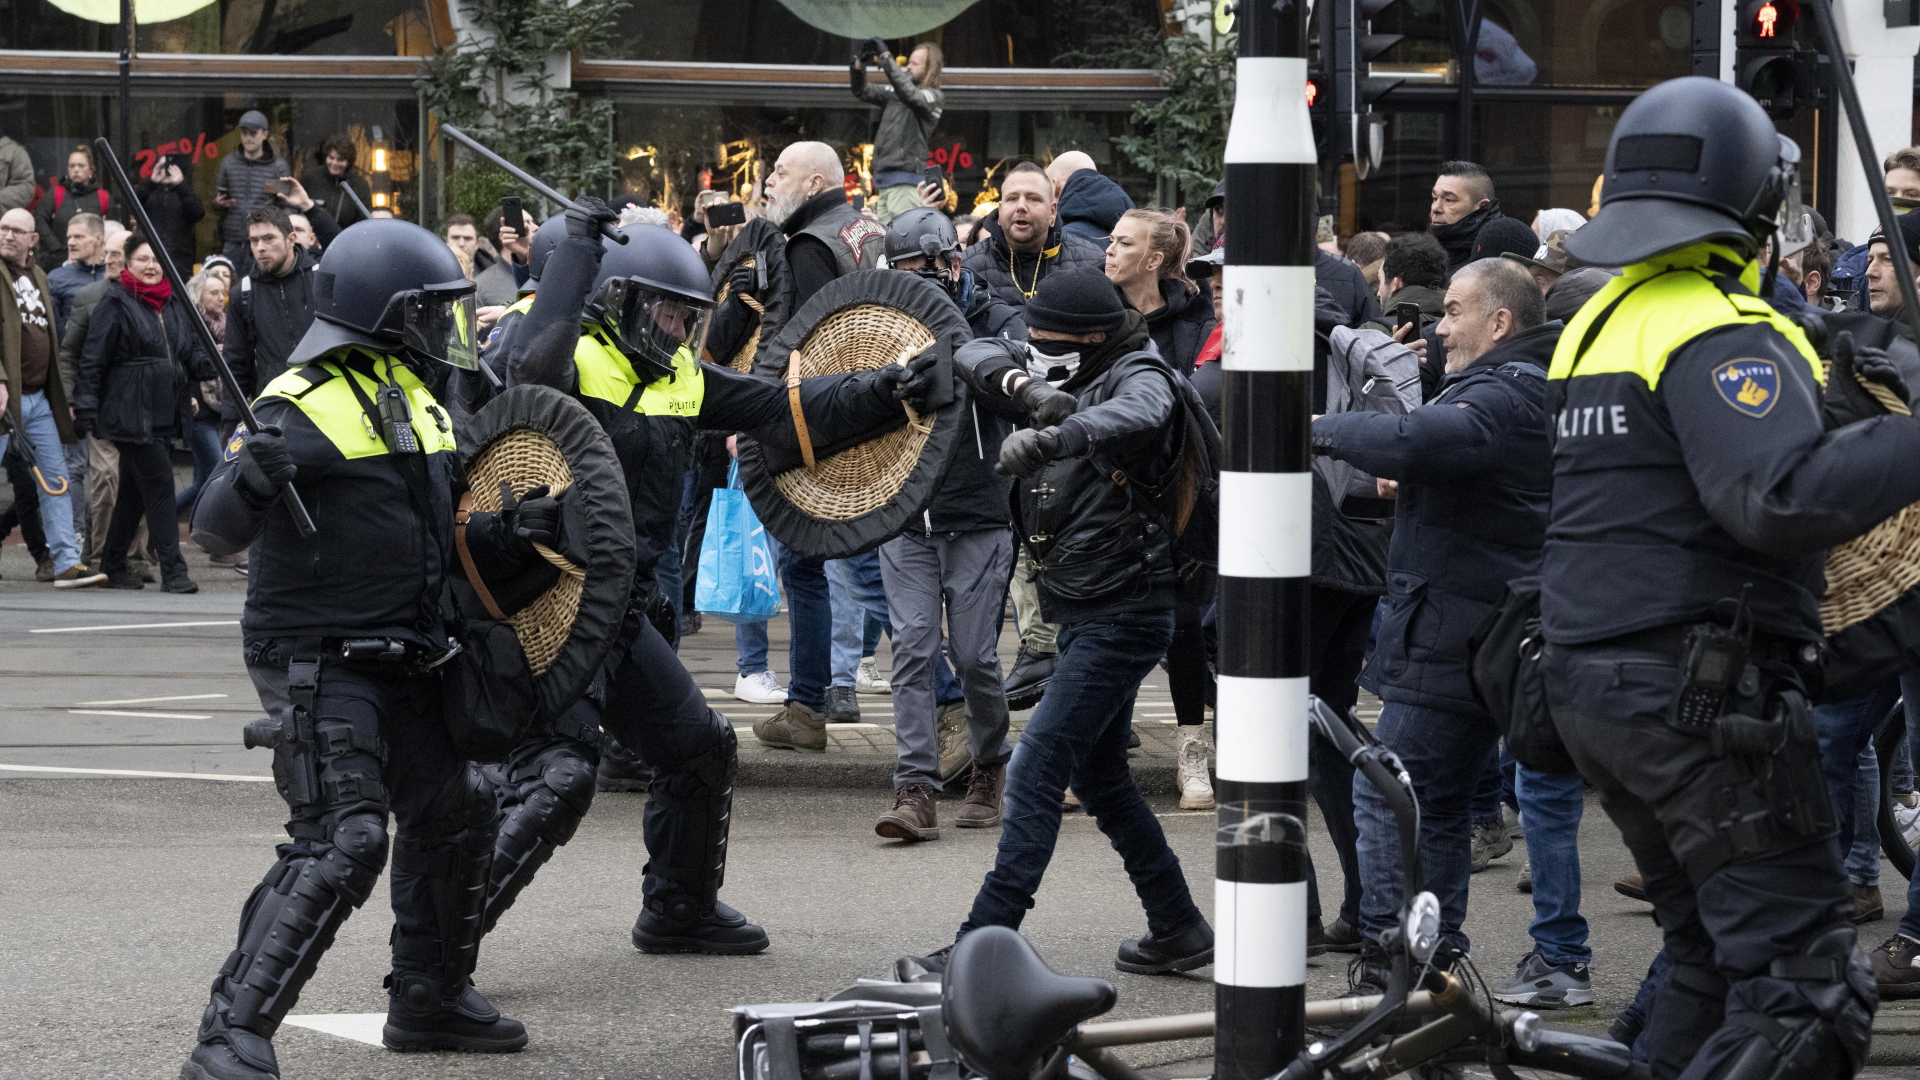 Polizei und Demonstranten liefern sich Auseinandersetzungen bei einer verbotenen Corona-Demo in Amsterdam | dpa